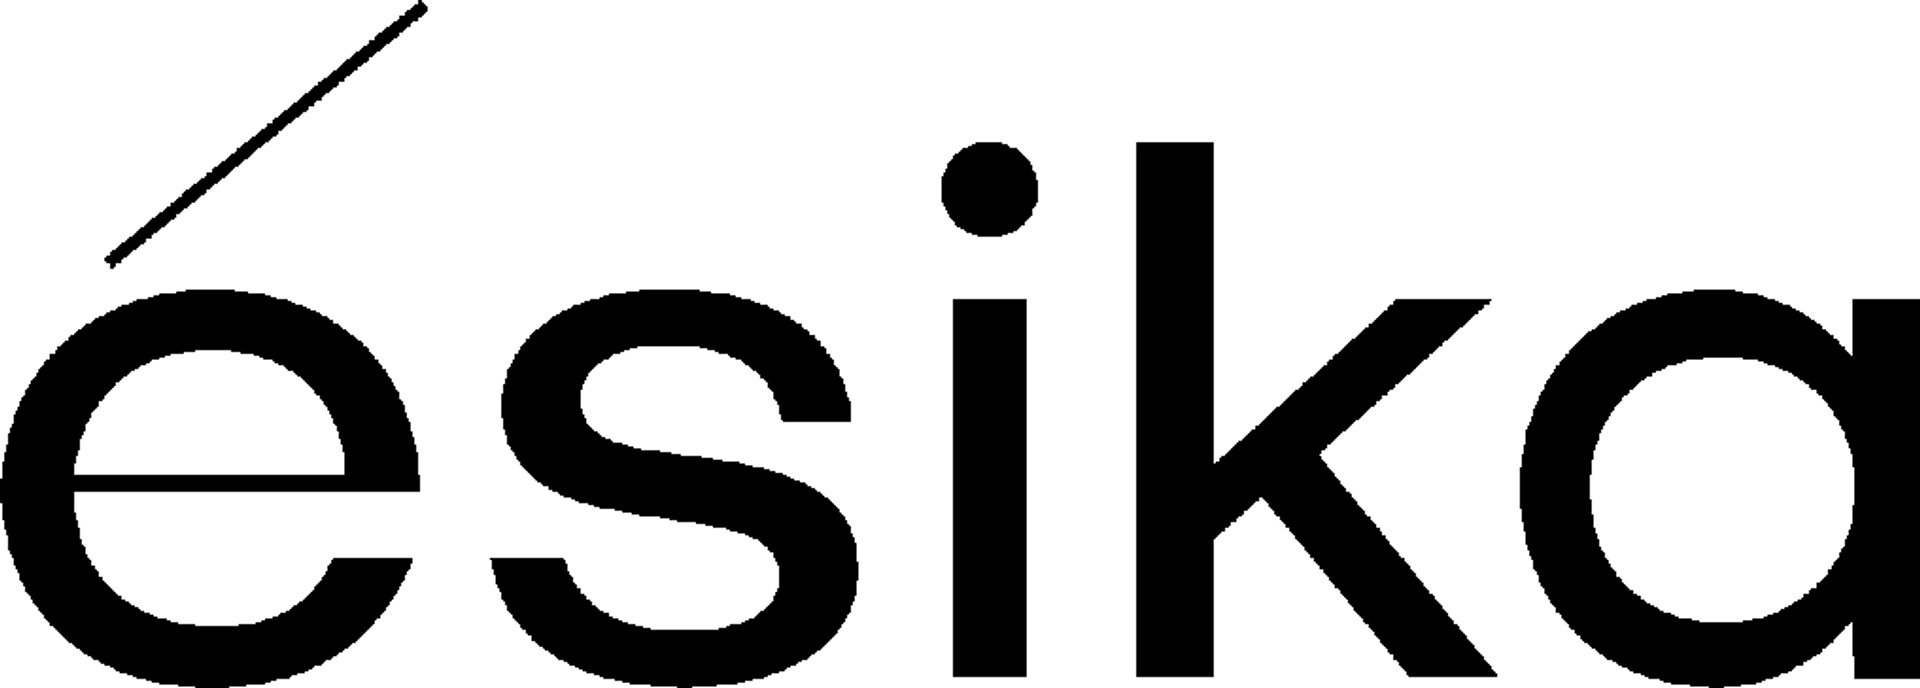 ÉSIKA logo